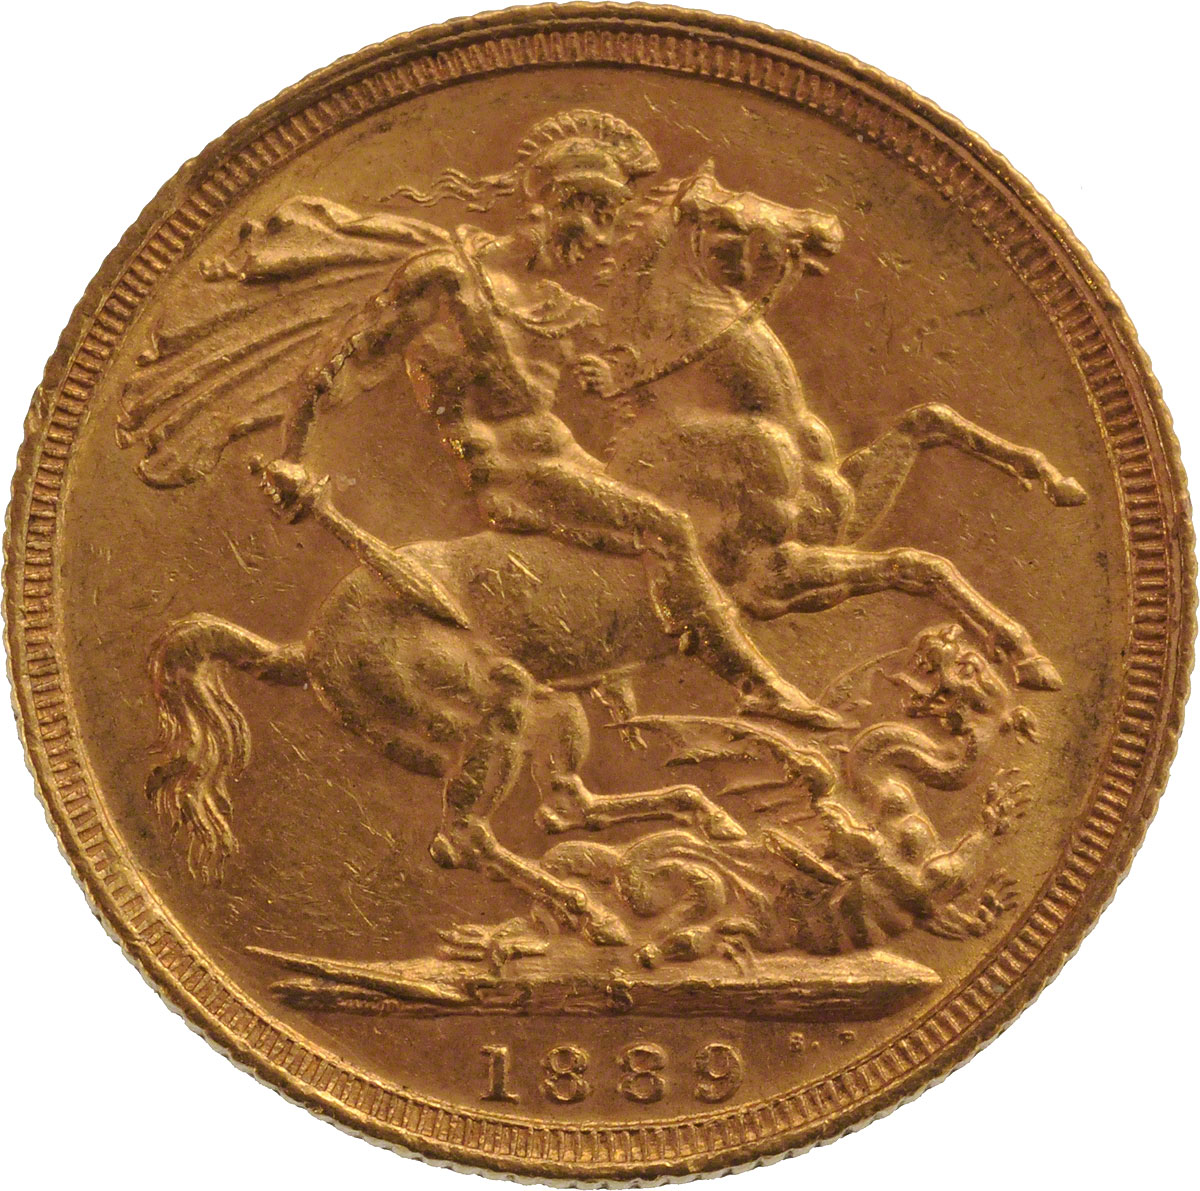 1889 Βικτώρια (Νομισματοκοπείο Σίδνεϊ)